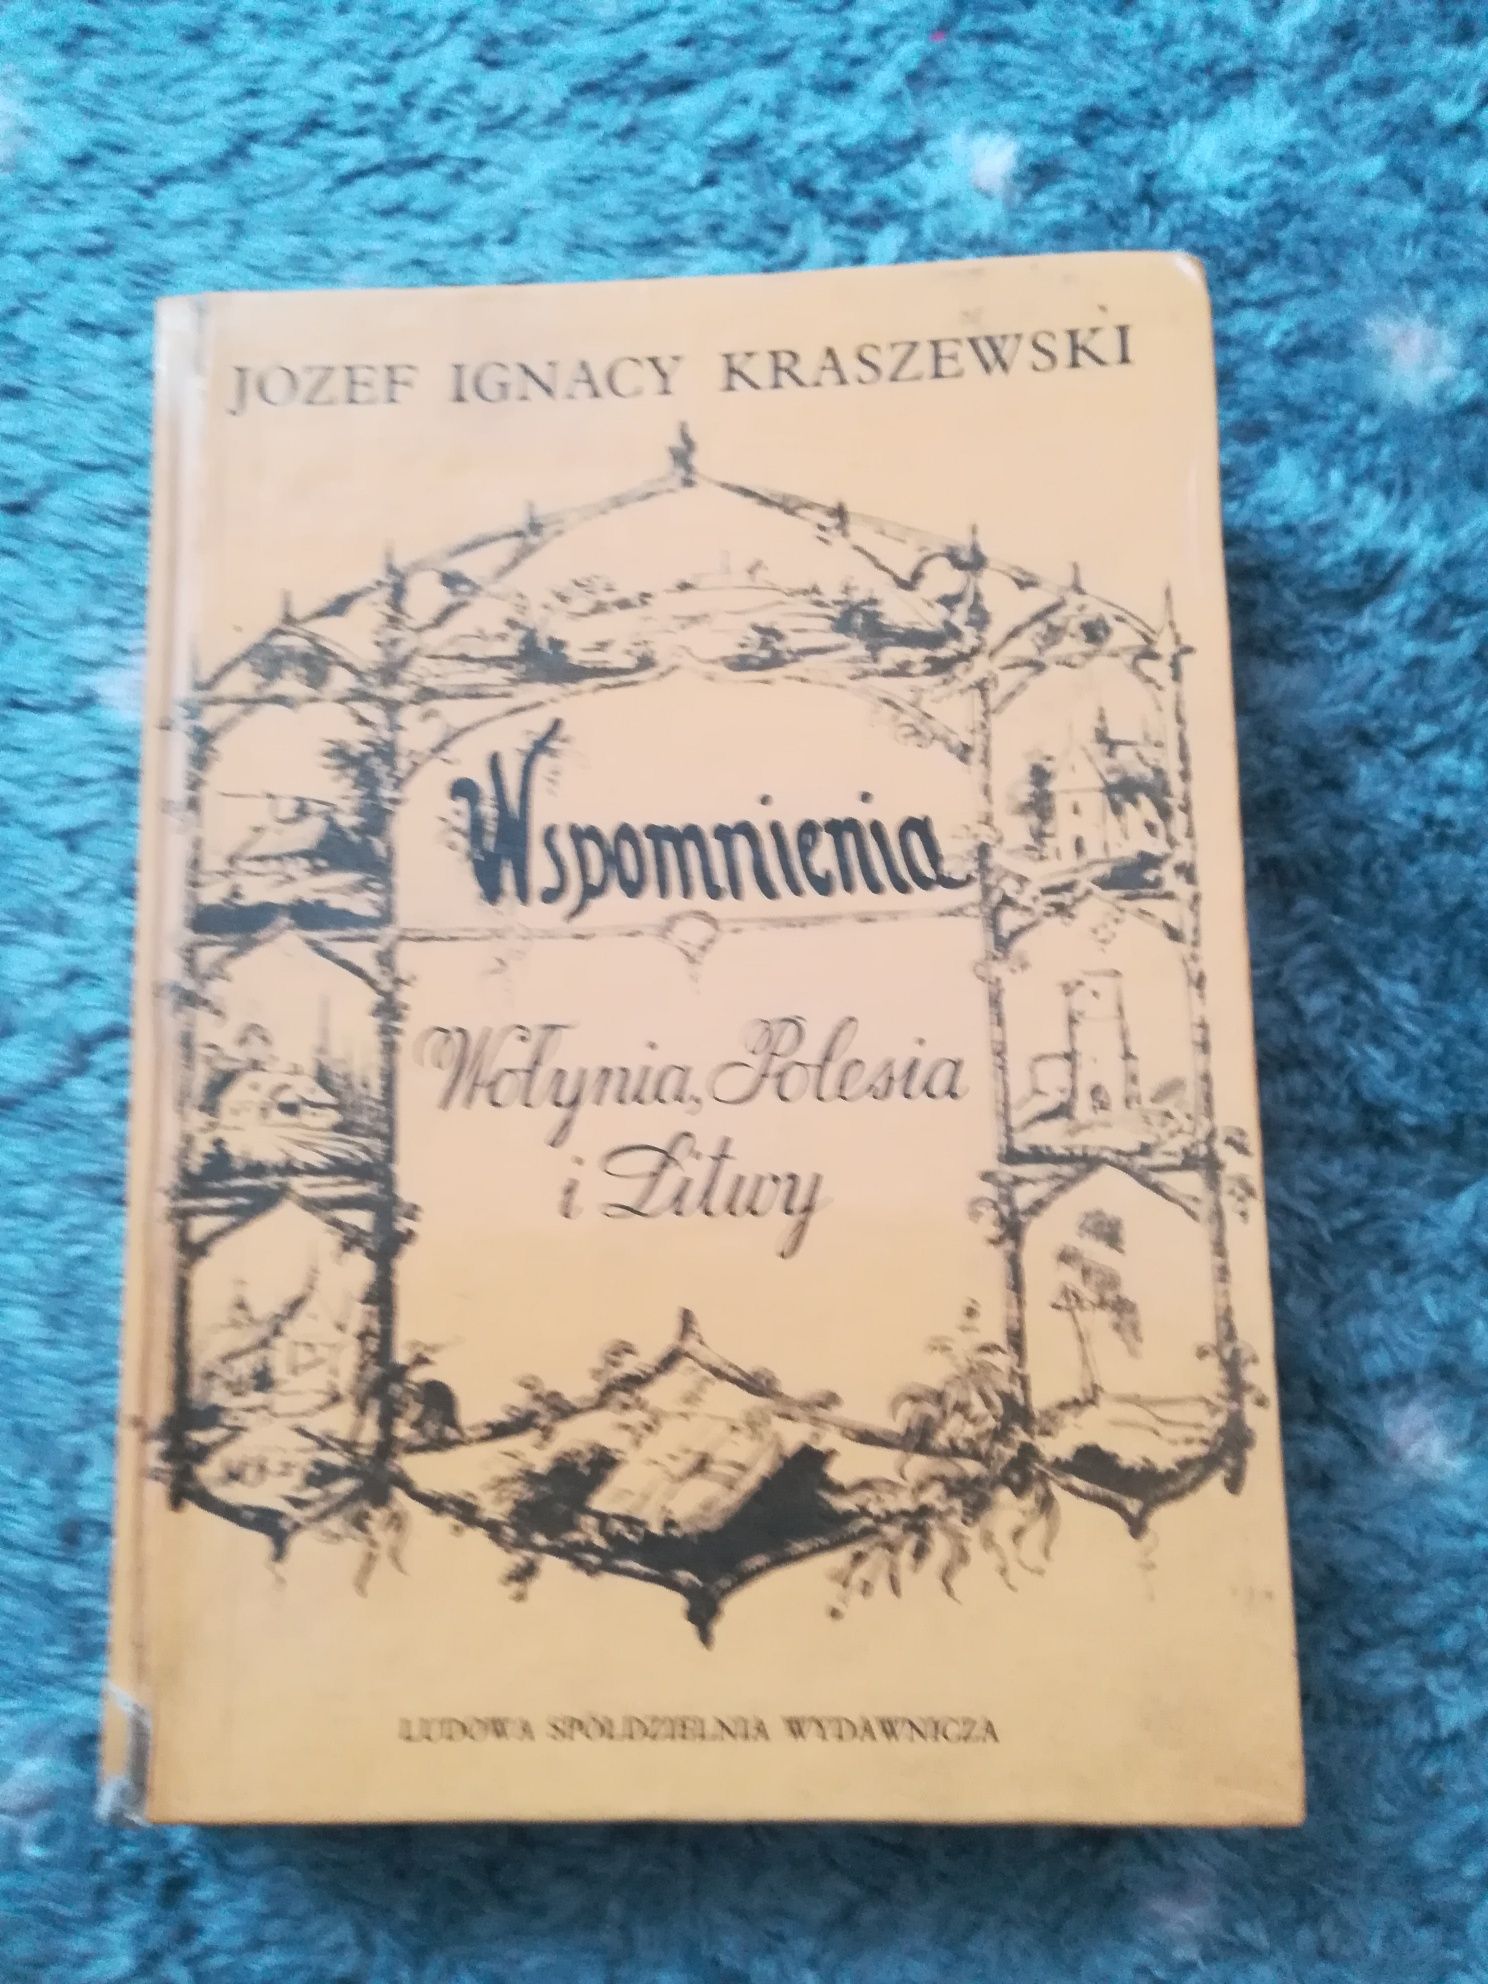 Wspomnienia wołynia Polesia i Litwy Józef Ignacy Kraszewski